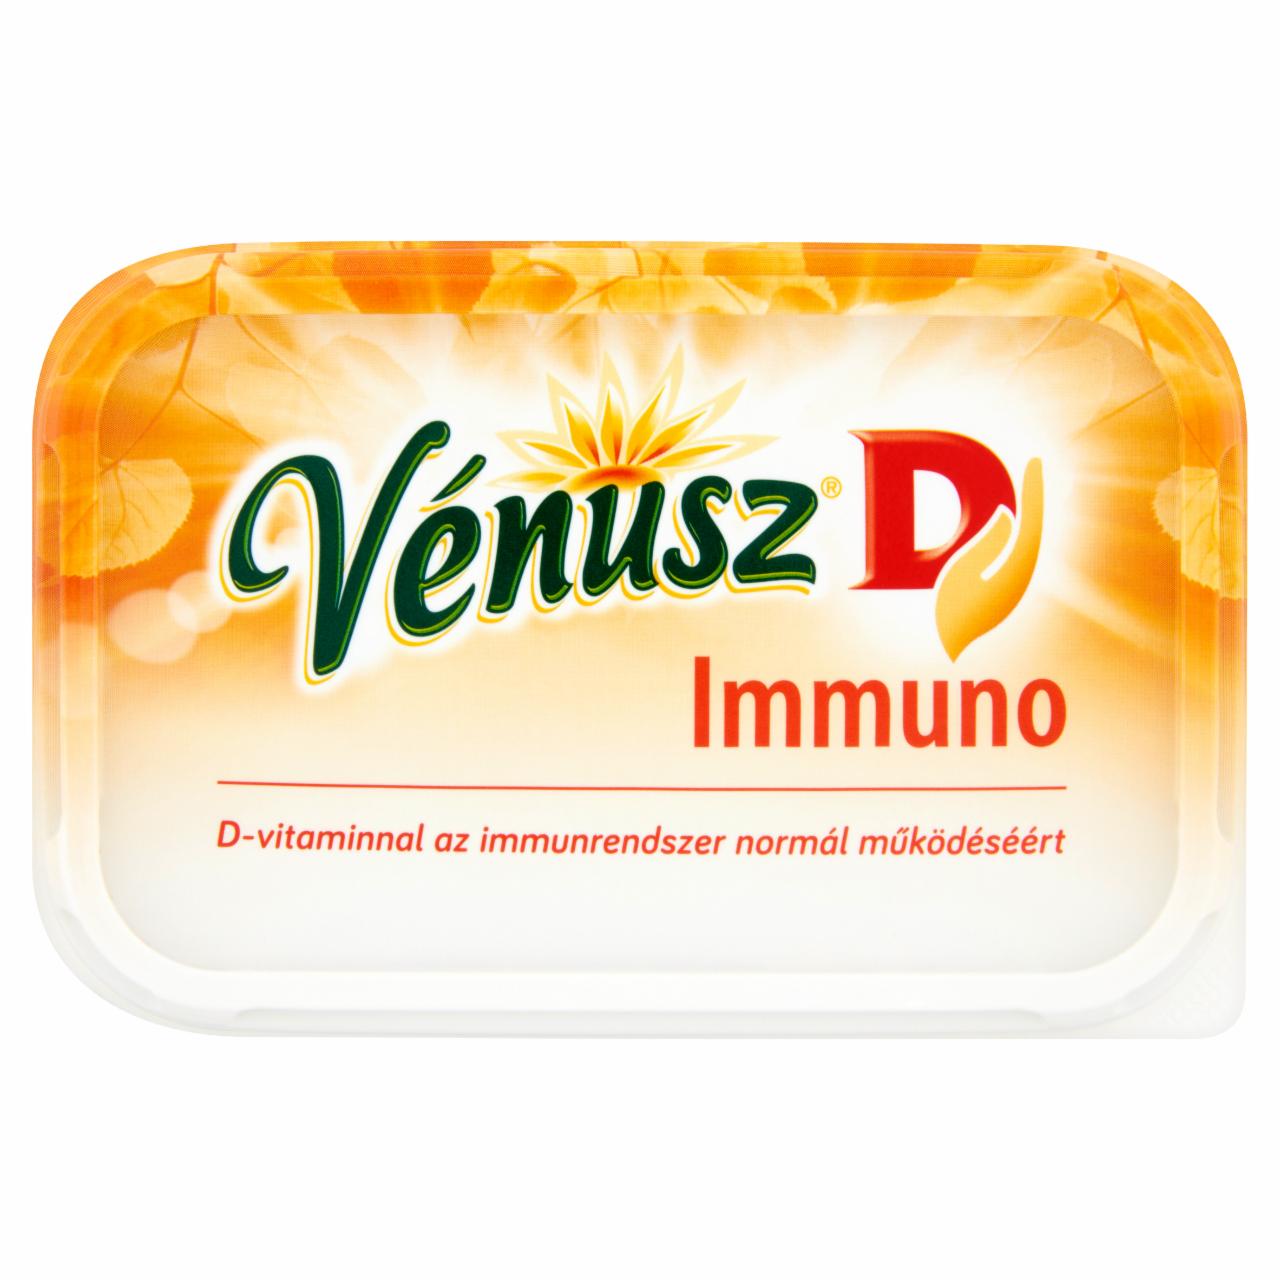 Képek - Vénusz Immuno margarin hozzáadott D-vitaminnal 400 g